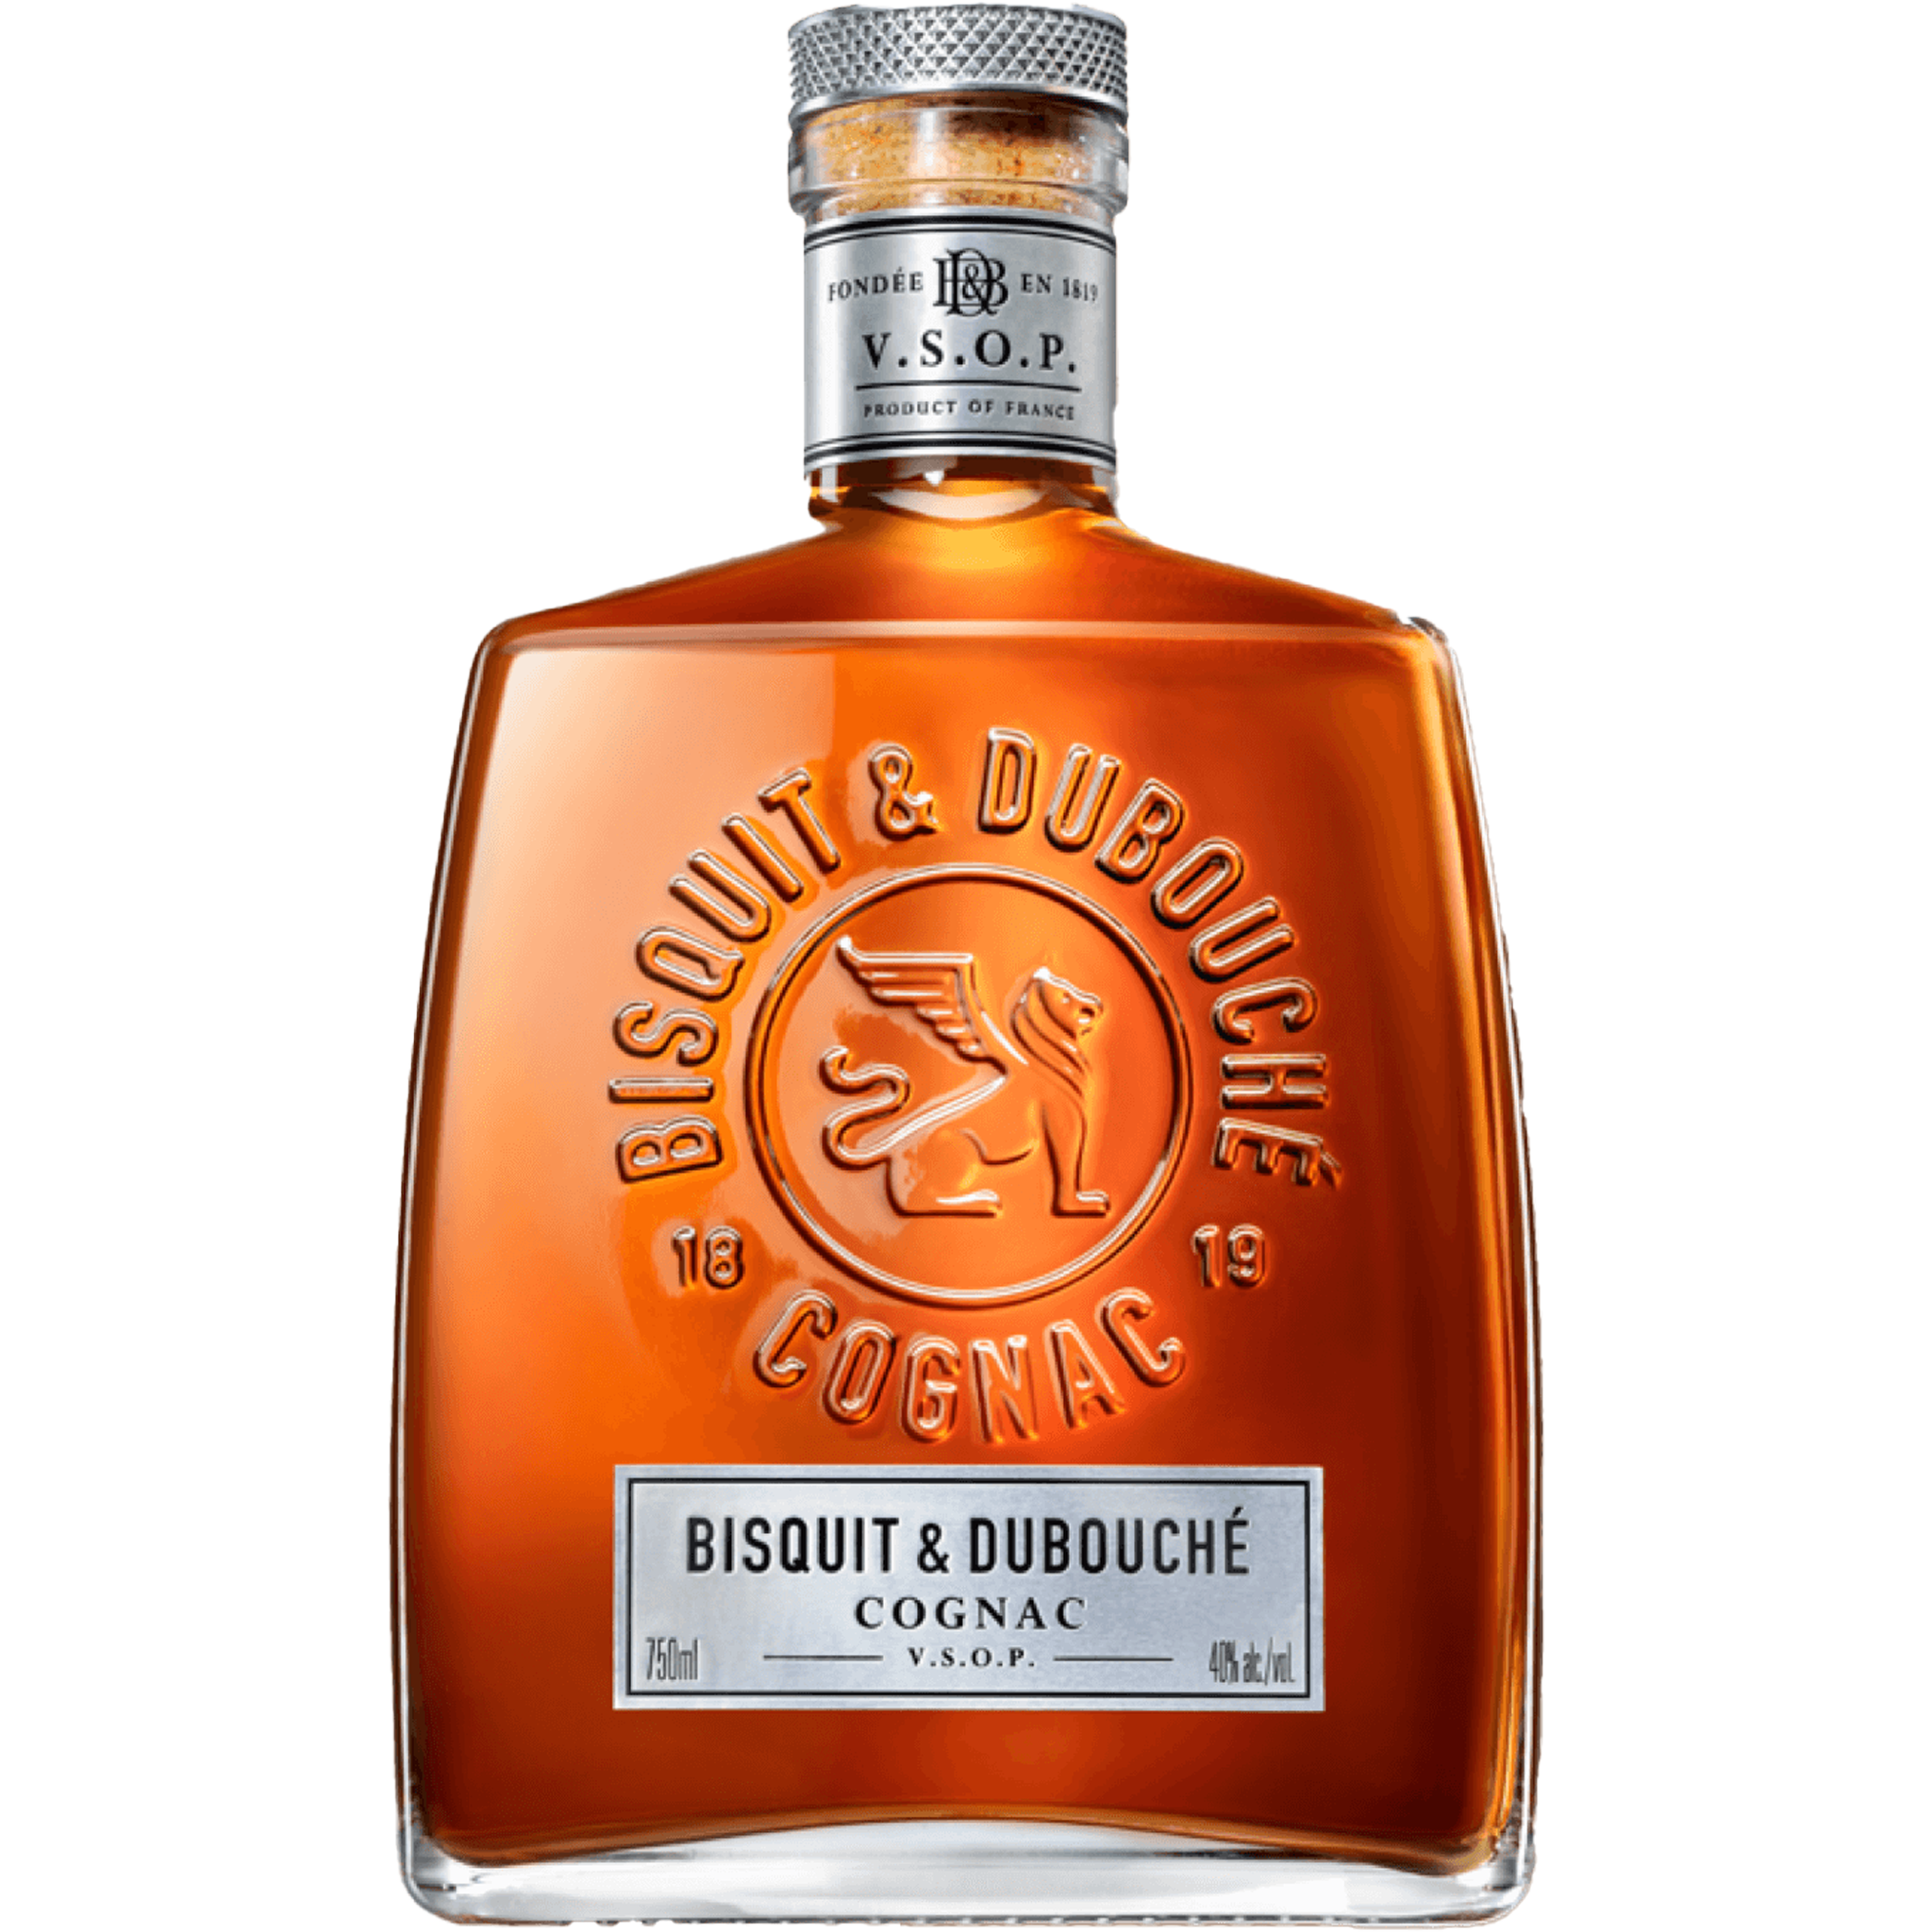 Bisquit & Dubouche VSOP Cognac (375ML)